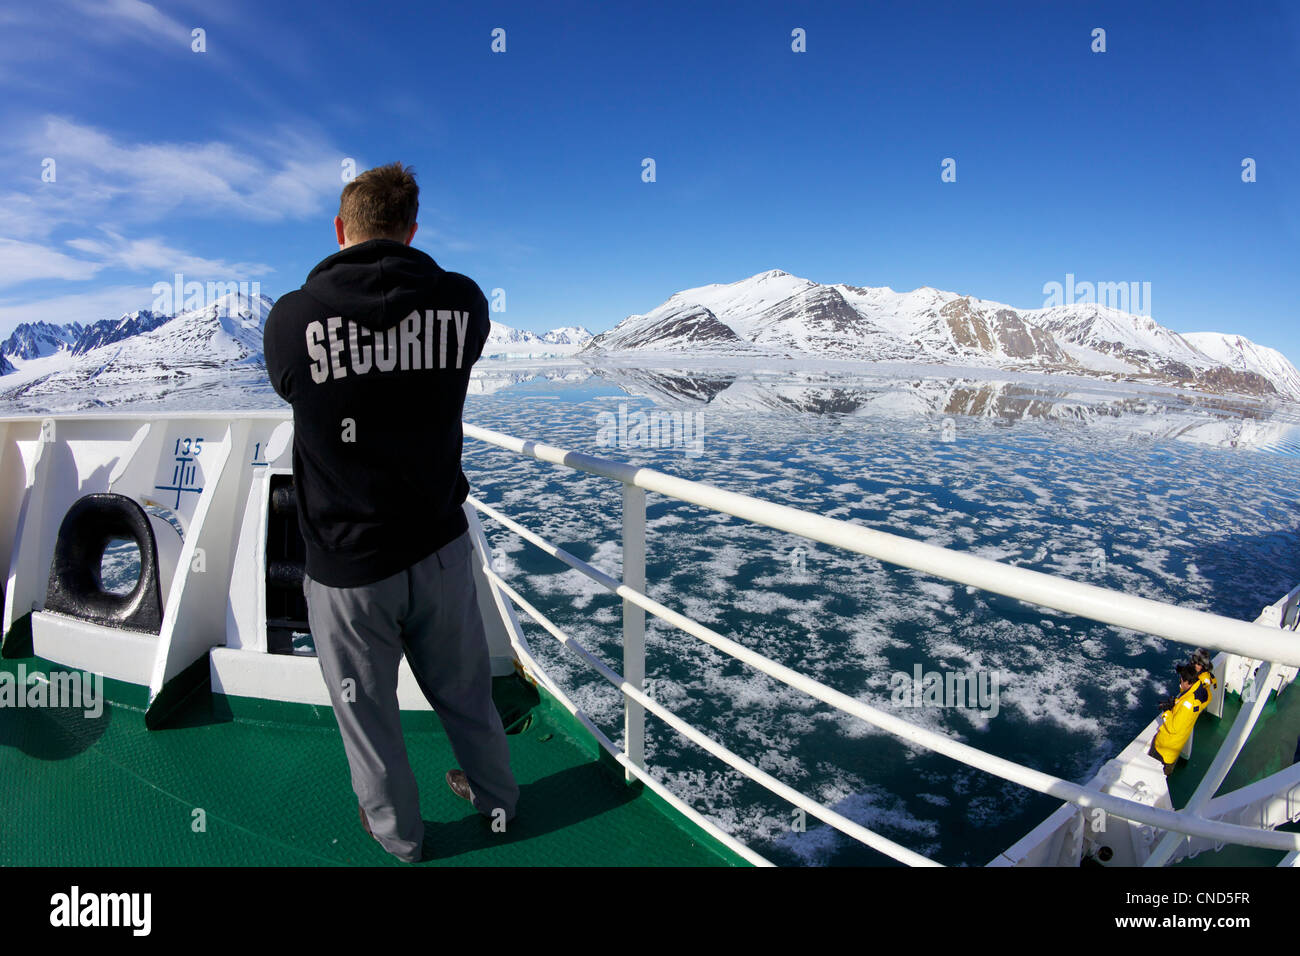 La sécurité à bord des navires de croisière d'exploration polaire de l'Arctique, l'Akademik Sergey Vavilov, près de Monaco glacier Liefdefjorden Svalbard Banque D'Images